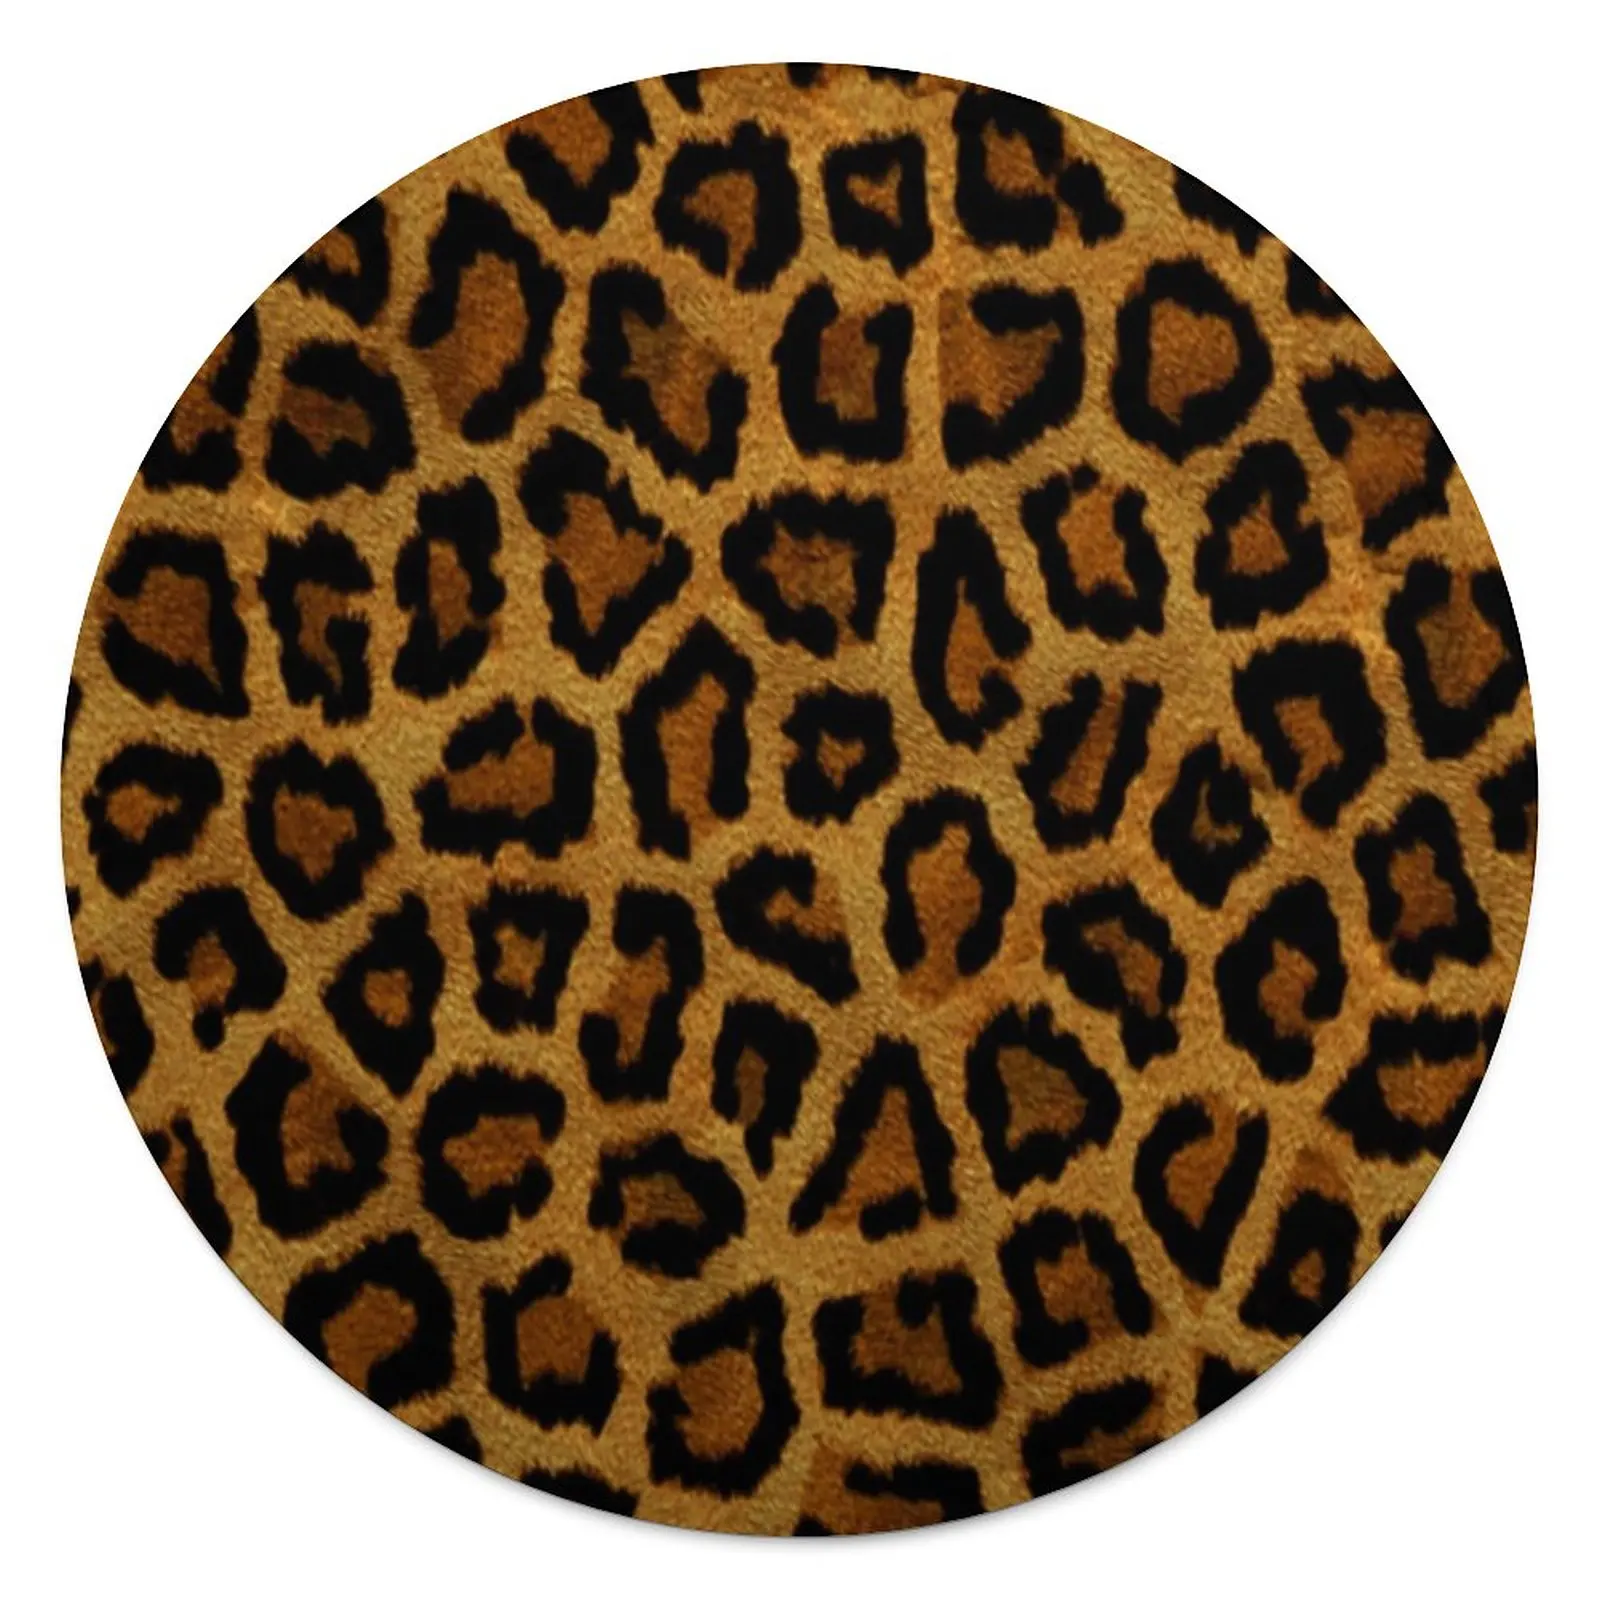 

Одеяло с изображением диких животных, недорогое теплое круглое флисовое покрывало с леопардовым принтом, супермягкое одеяло для любой погоды